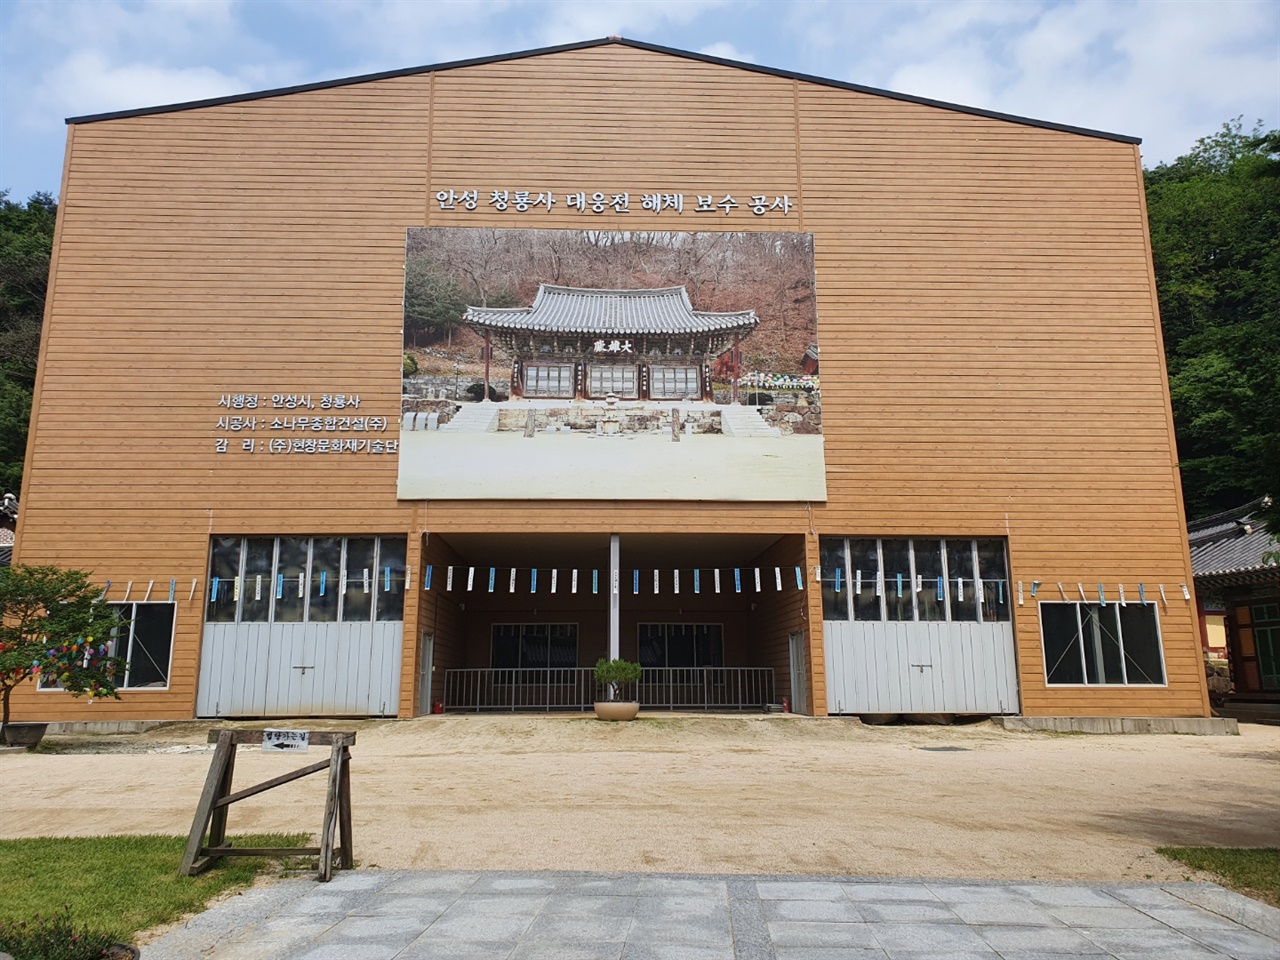 청룡사 대웅전은 조선 후기 양식을 보여주는 대표적인 건축물로 유명하다. 하지만 현재 해체 보수공사 중이라 제대로 볼 수 없었다.